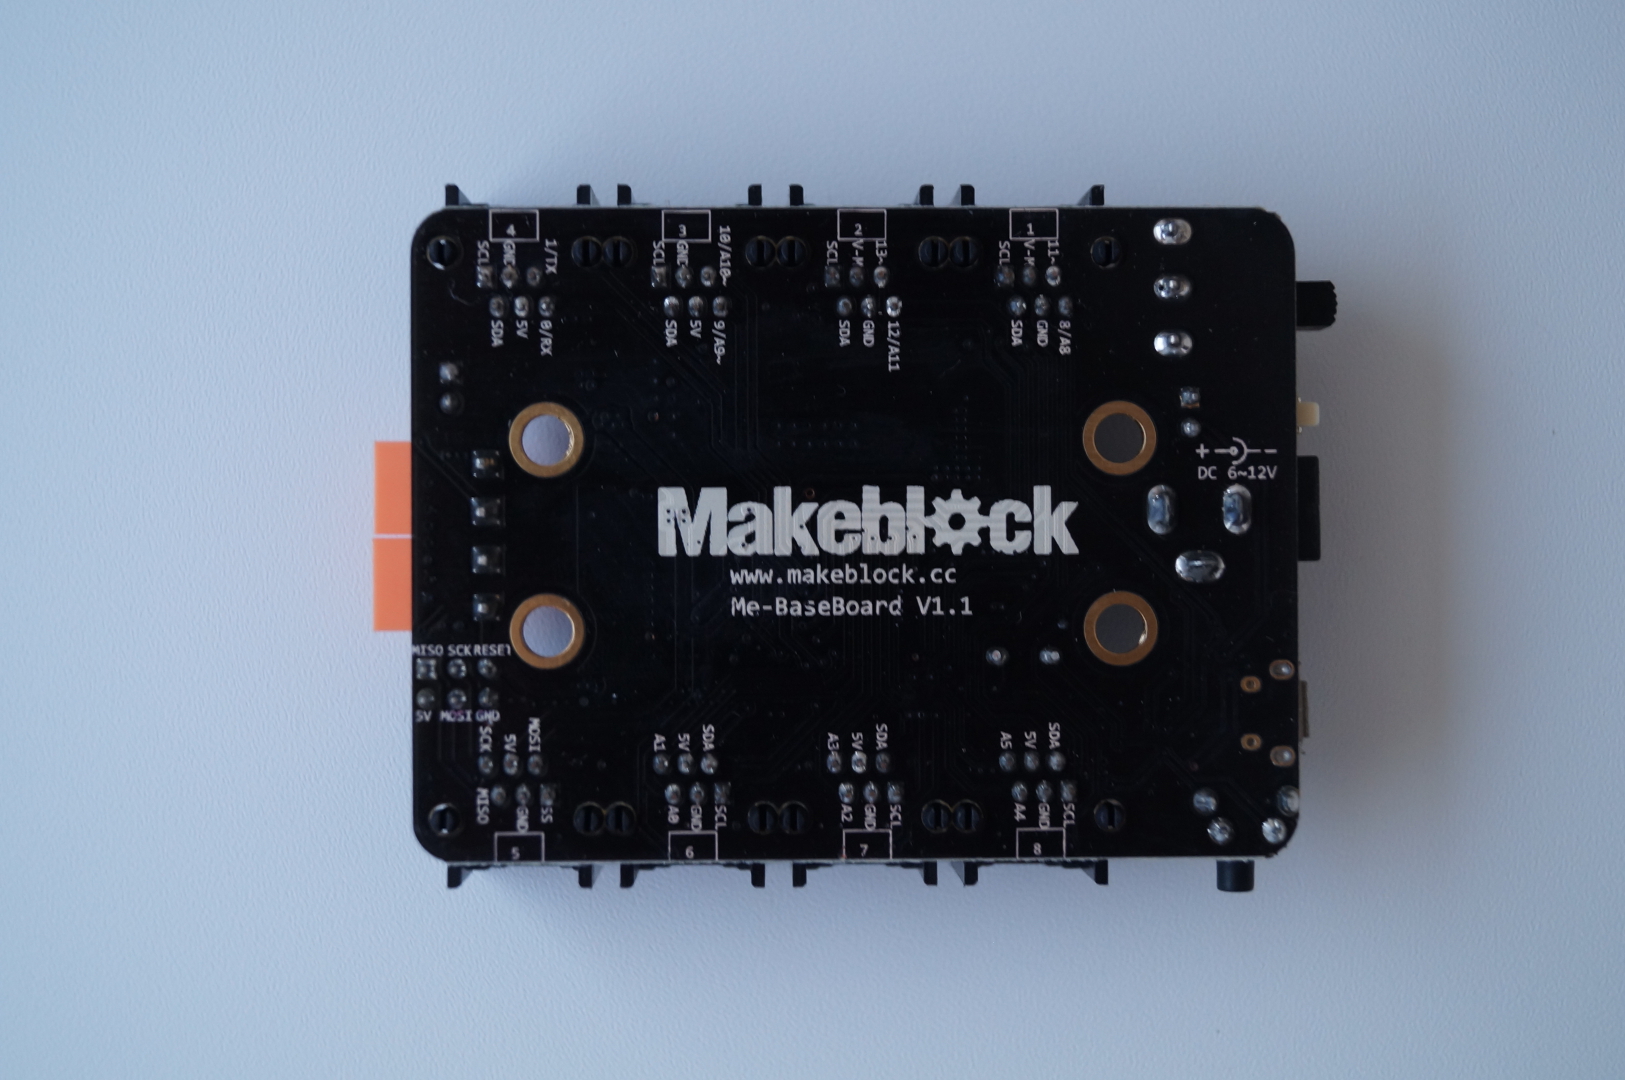 Обзор Makeblock Starter Robot Kit V2.0. Часть 1. Распаковываем